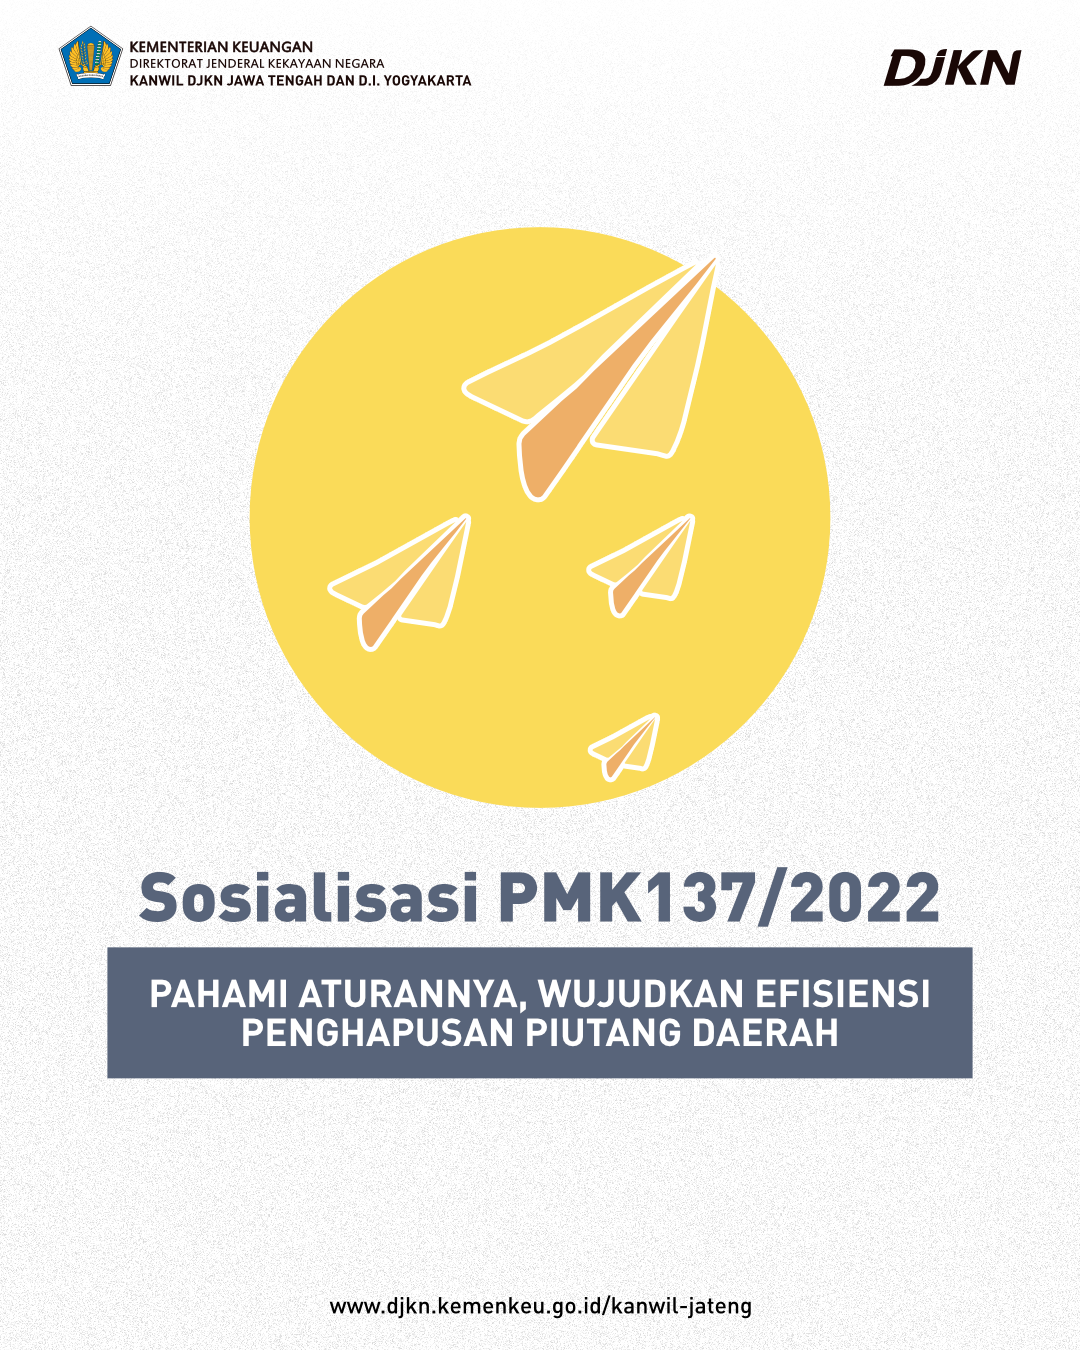 PMK 137/2022, Regulasi Baru Terkait dengan Penghapusan Piutang Daerah